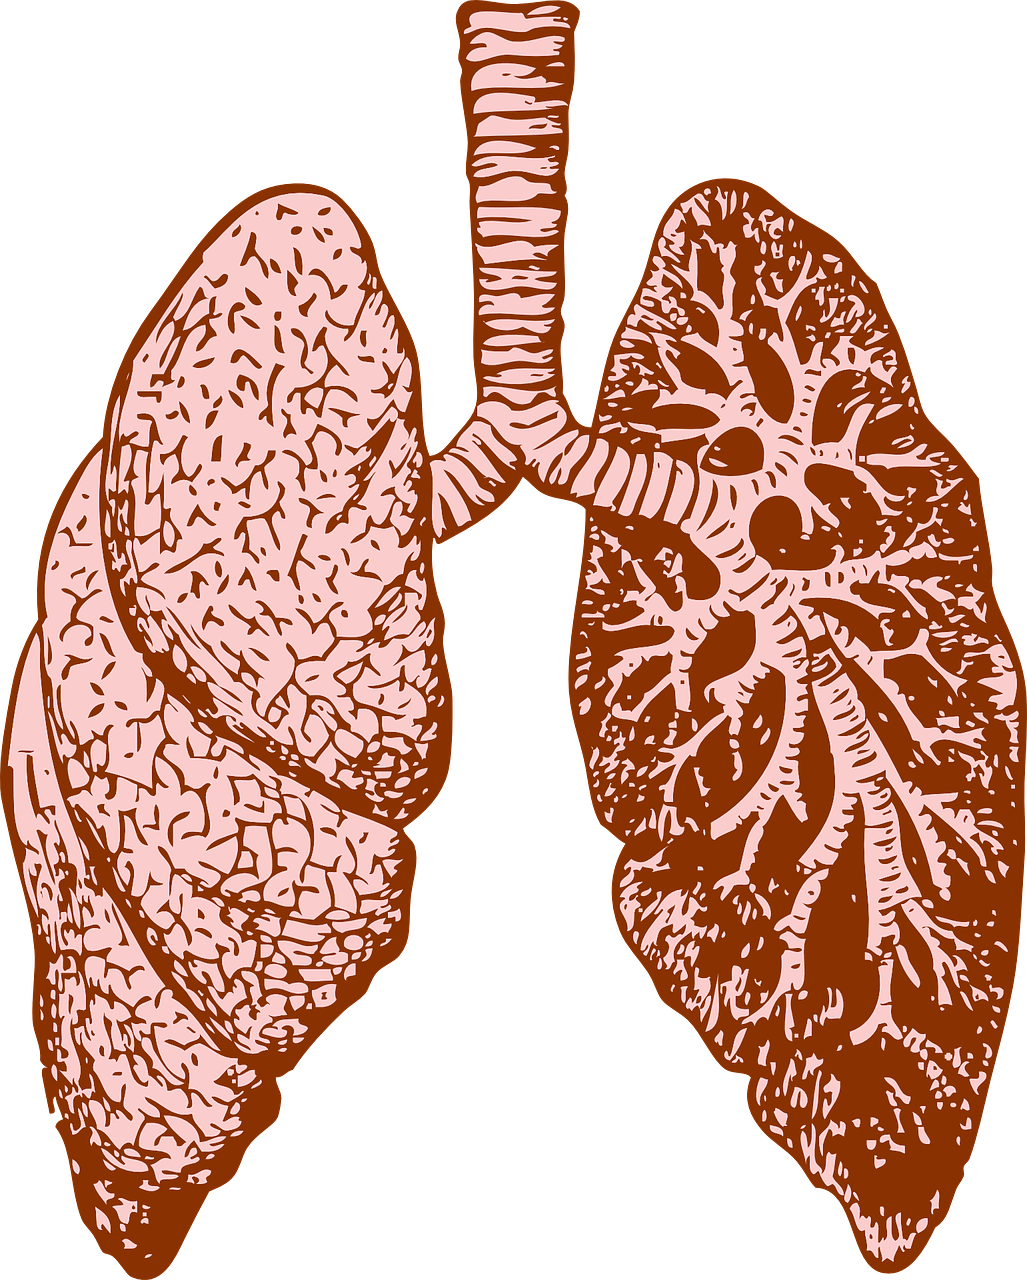 Plaučiai, Organas, Žmogus, Diagrama, Medicina, Biologija, Anatomija, Mokslas, Sistema, Vidinis